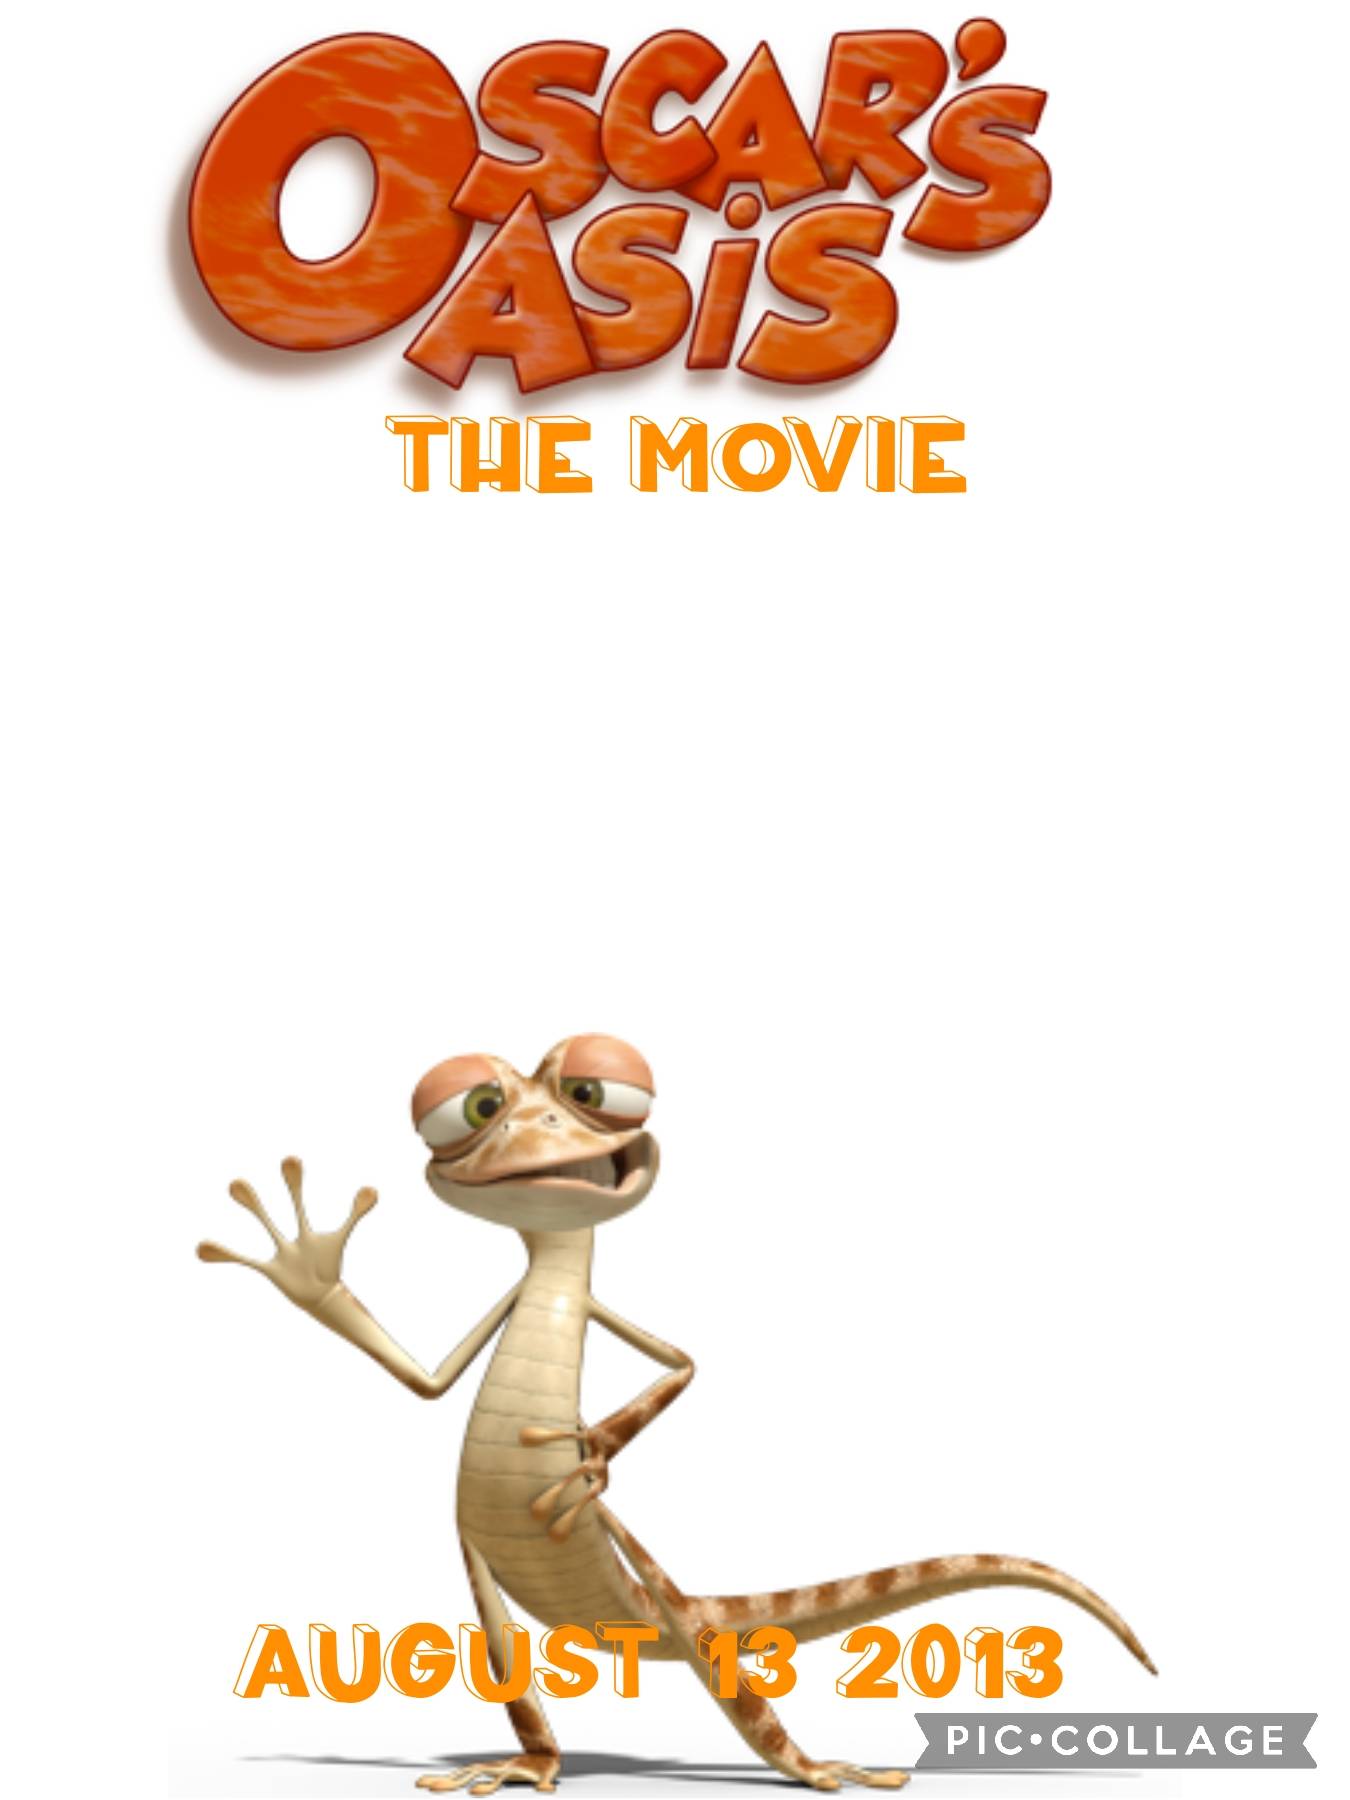 Oscar's oasis